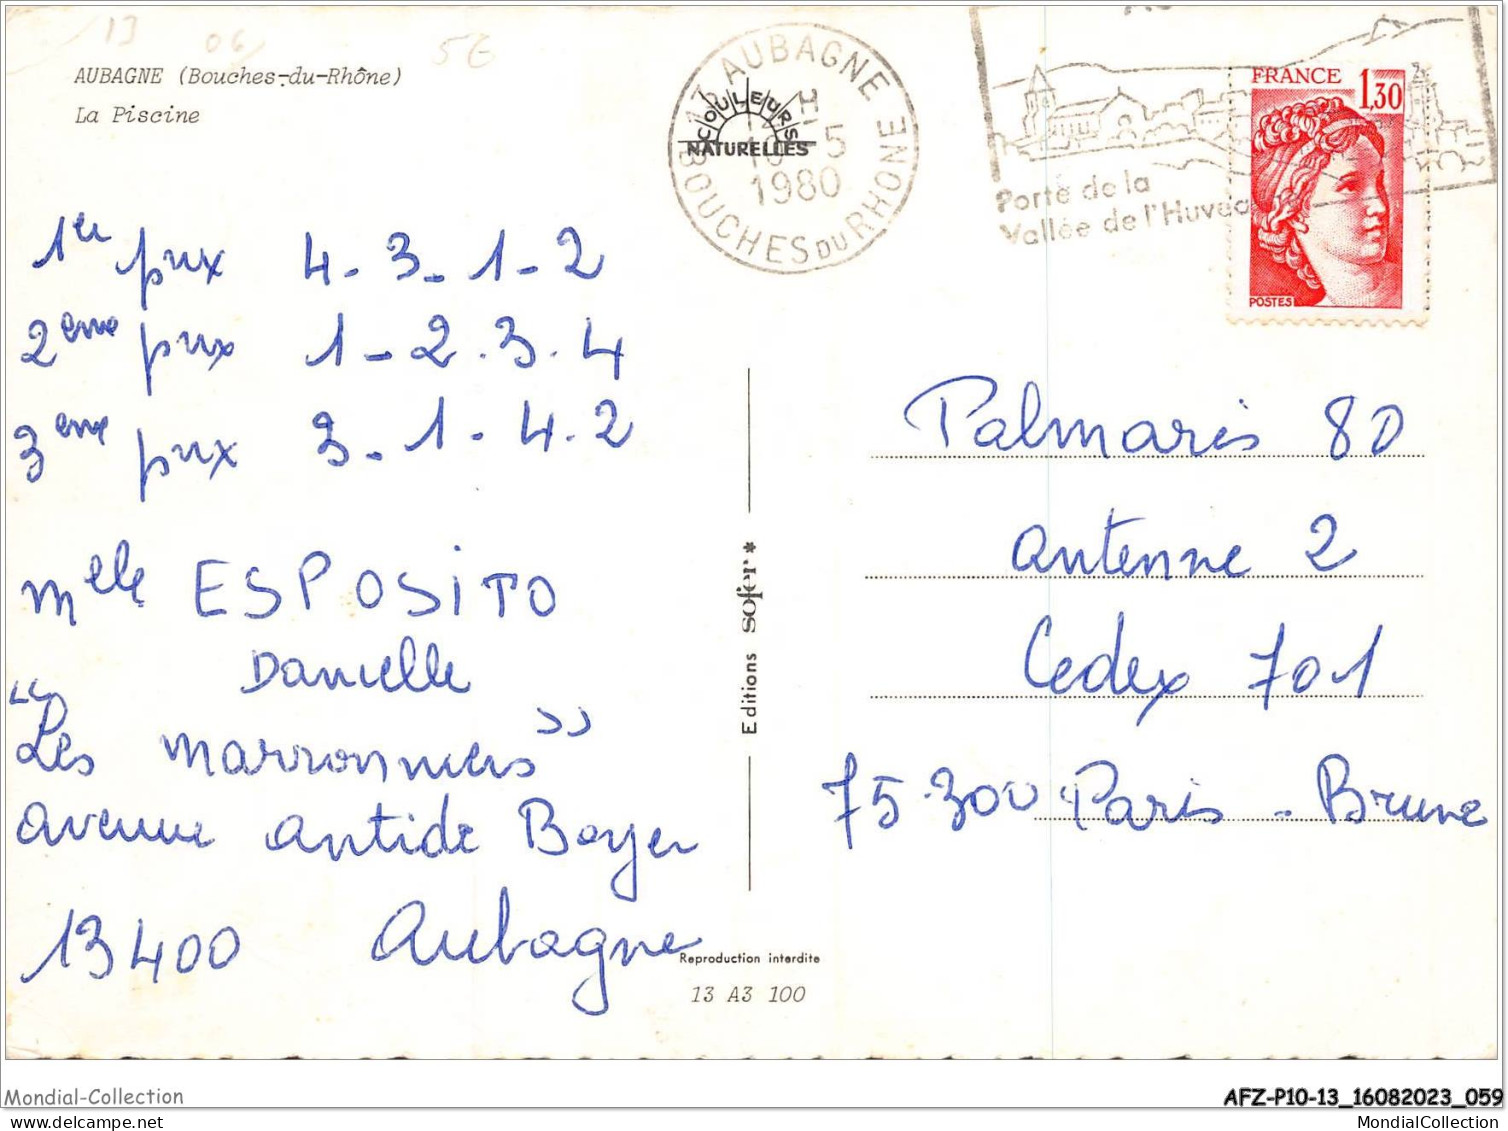 AFZP10-13-0813 - AUBAGNE - La Piscine - Aubagne